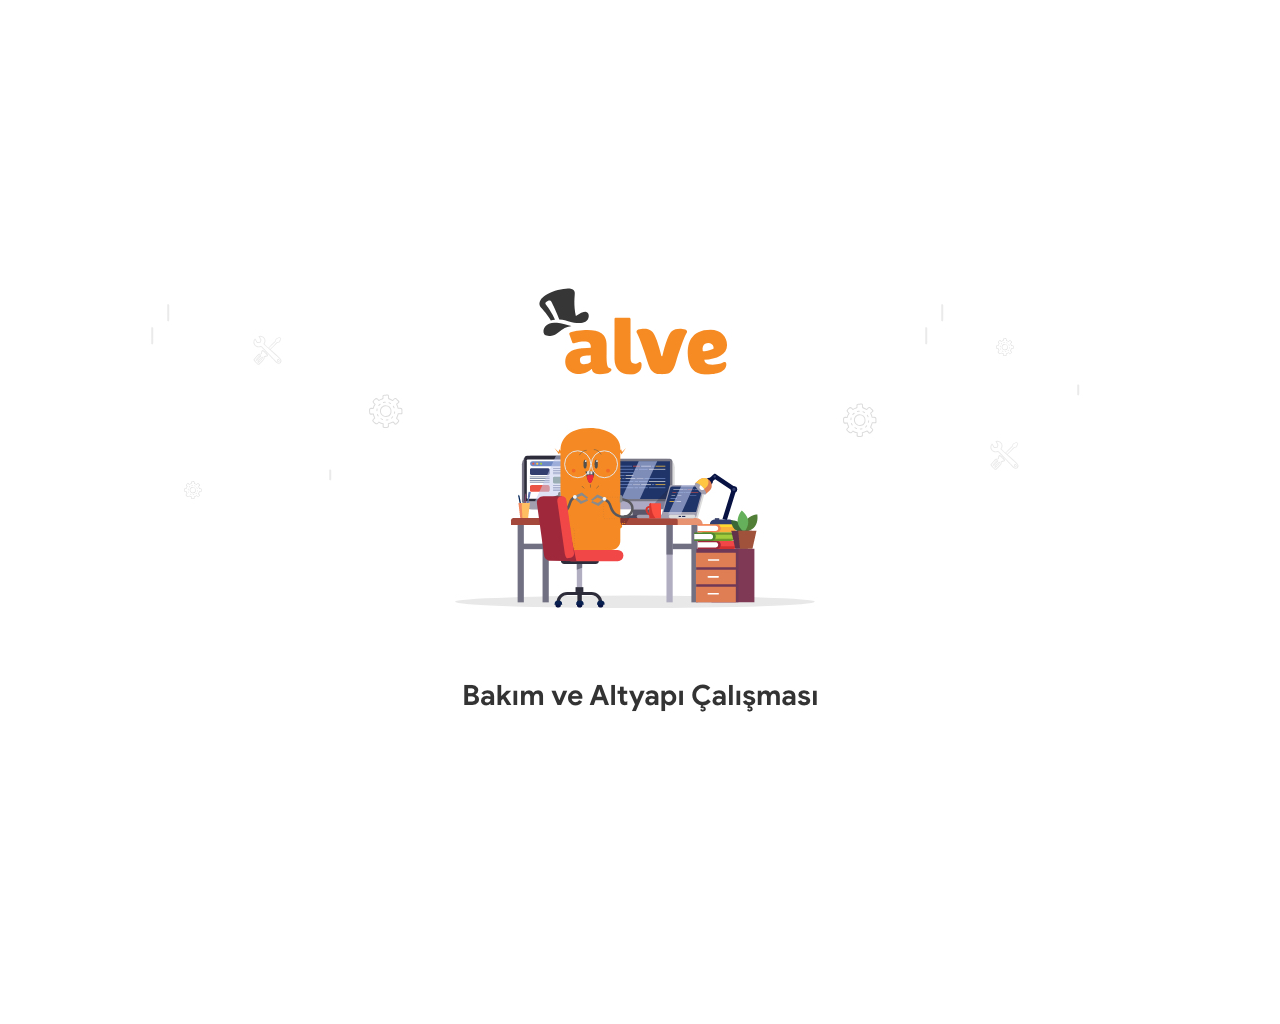 www.alve.com